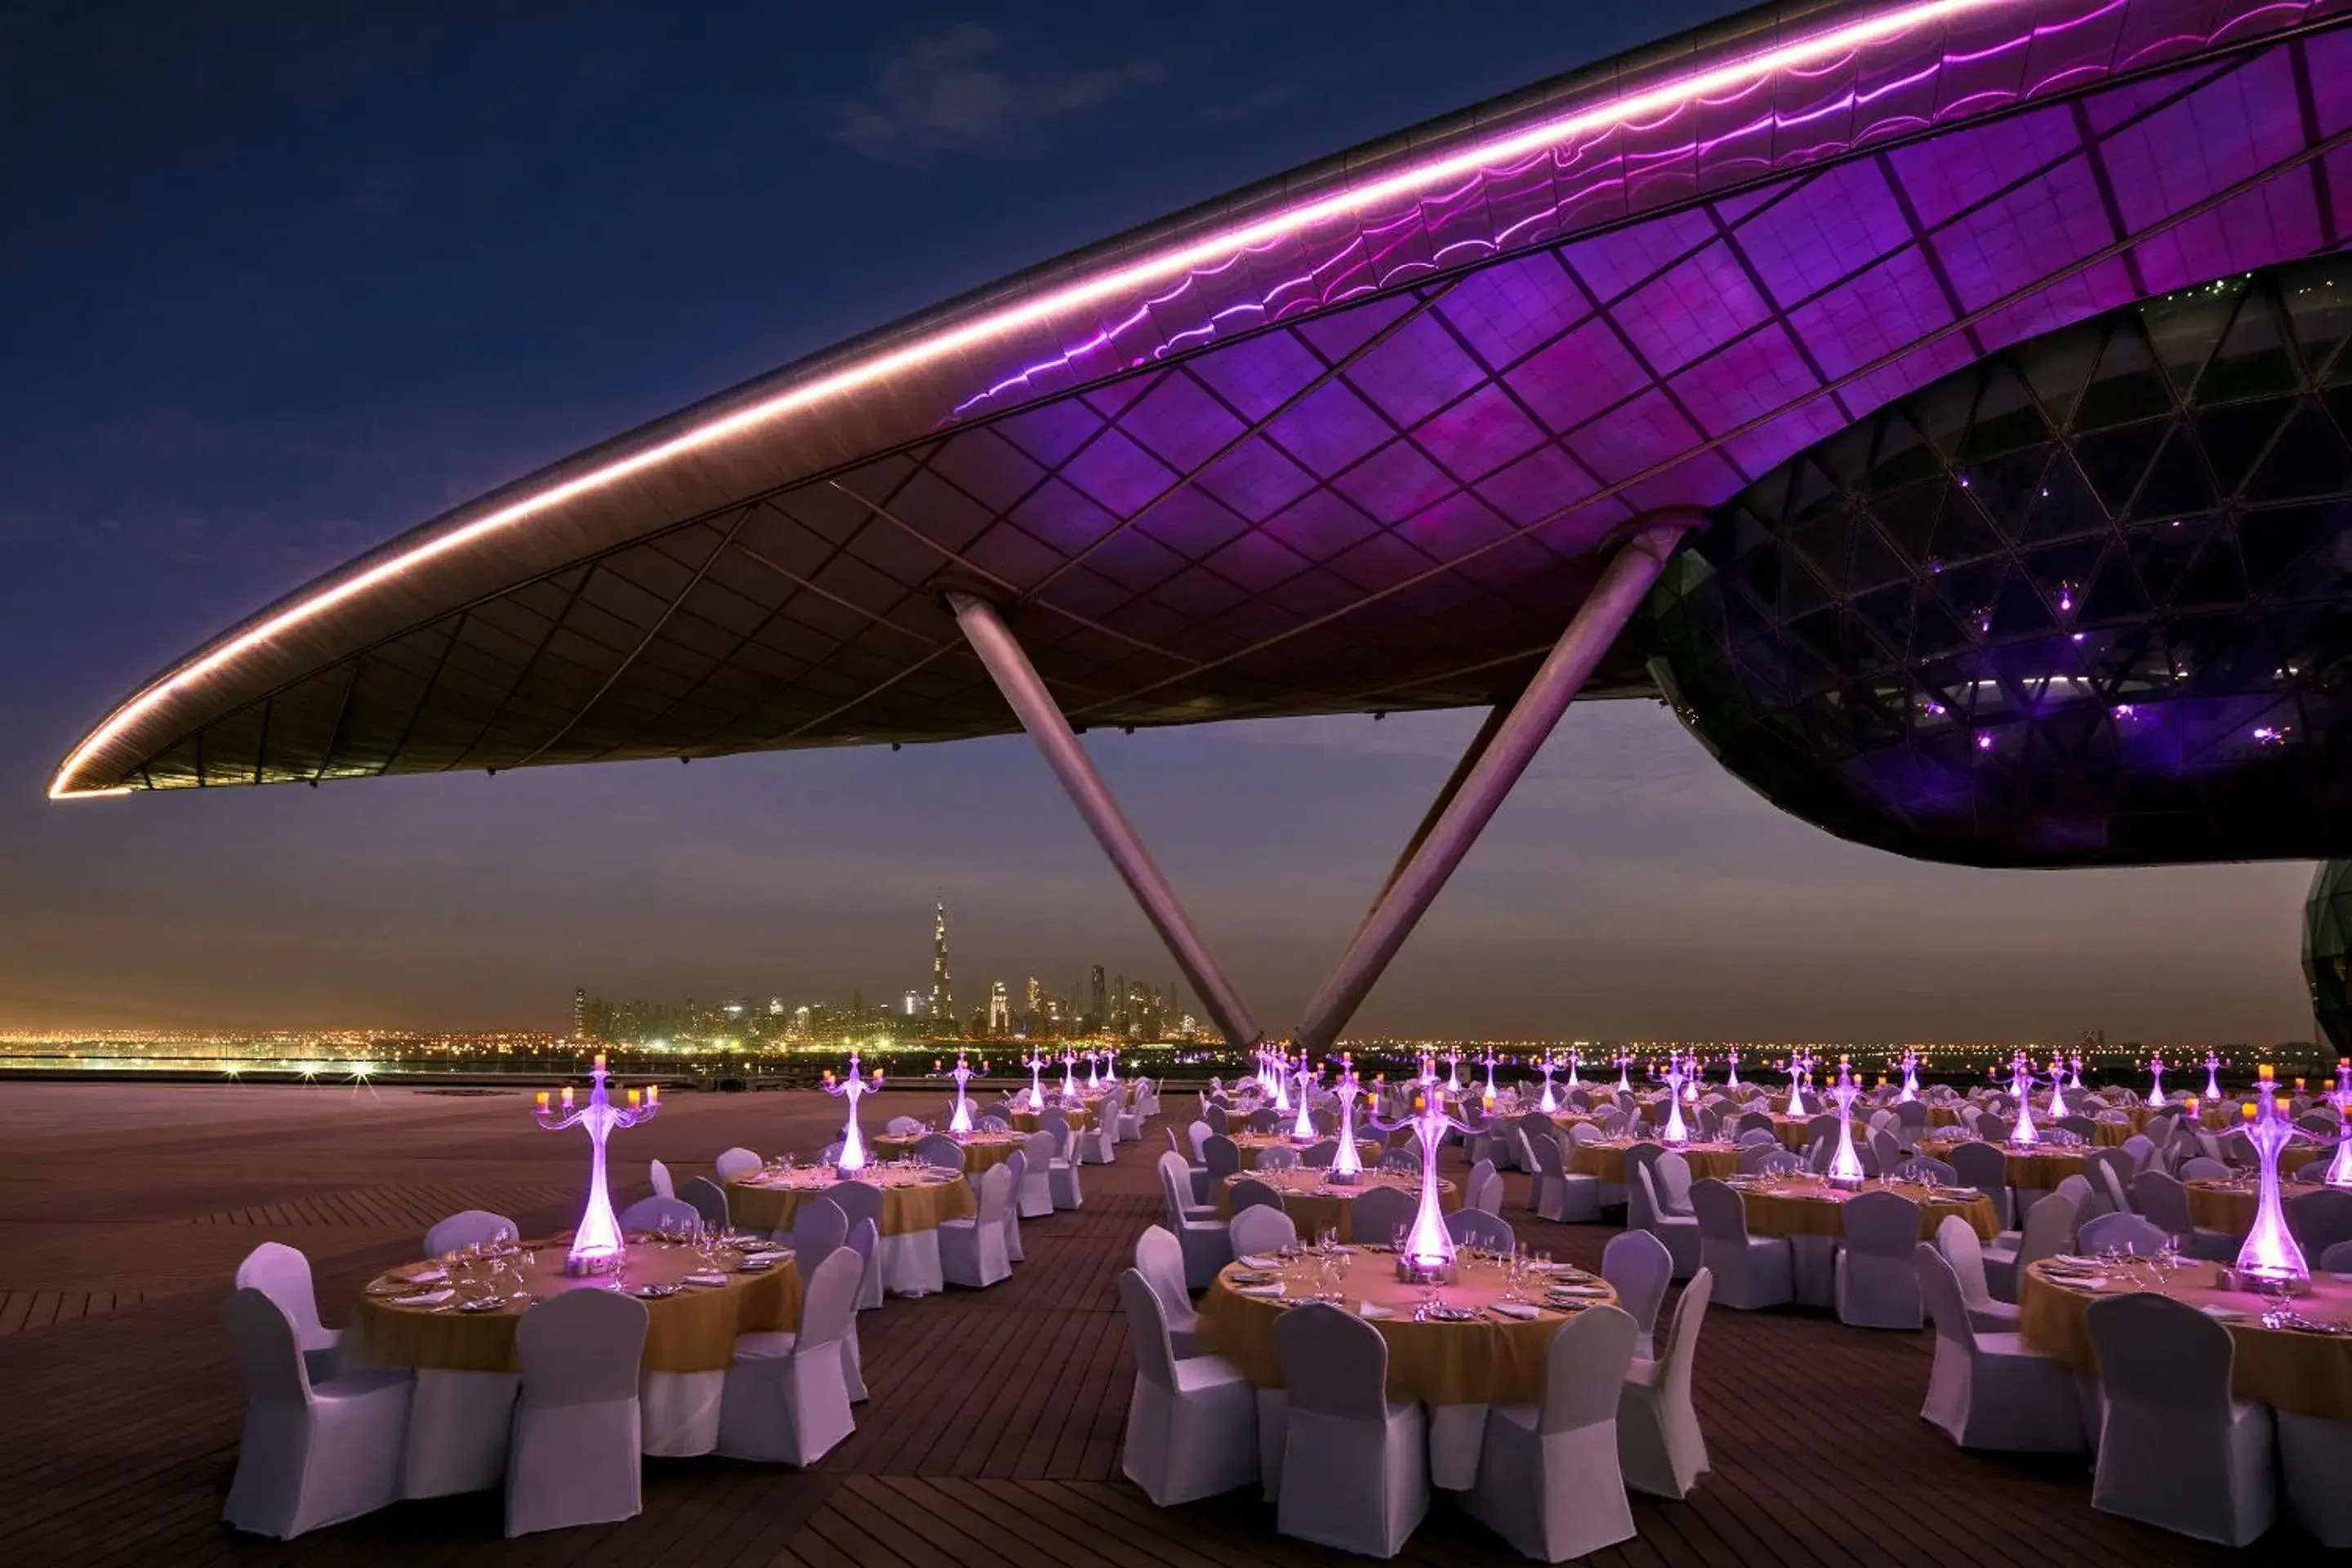 Banquet/Function facilities, Banquet Facilities in The Meydan Hotel